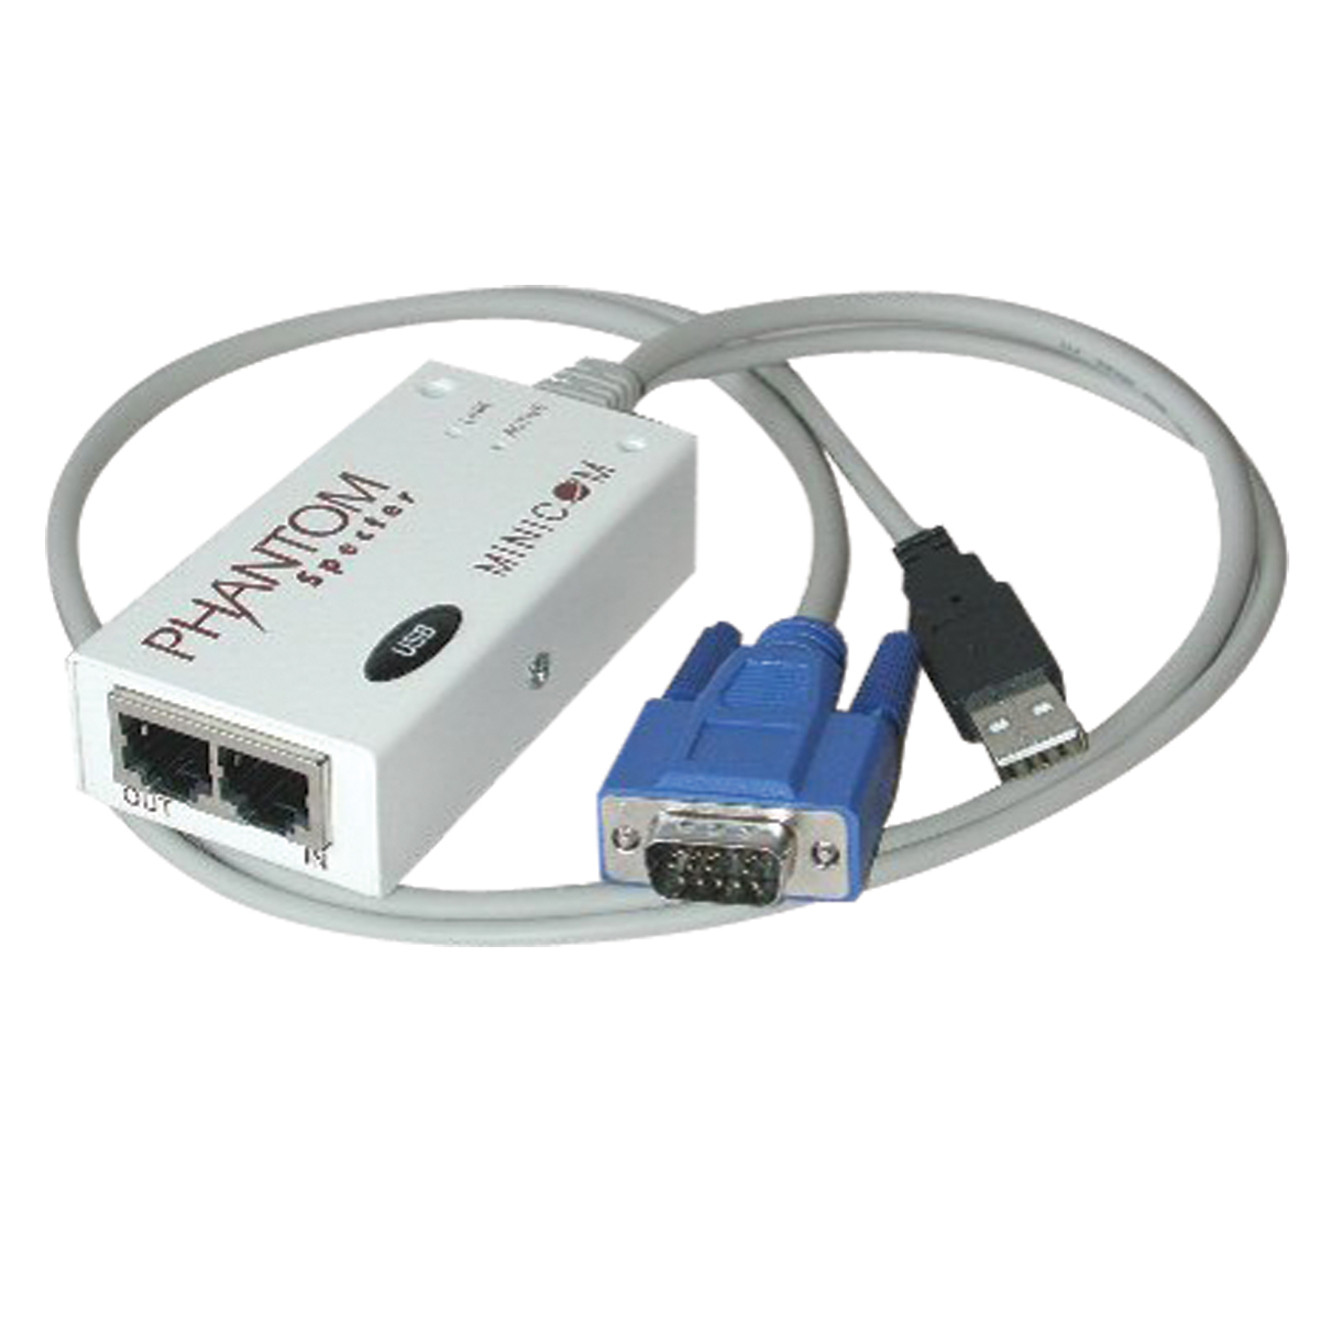 Tripp Lite Minicom USB Remote Unit for Phantom Specter II KVM Switch TAA GSA63 x 1, 11 x Type A USB, 1 x HD-15 Video” 0SU51011